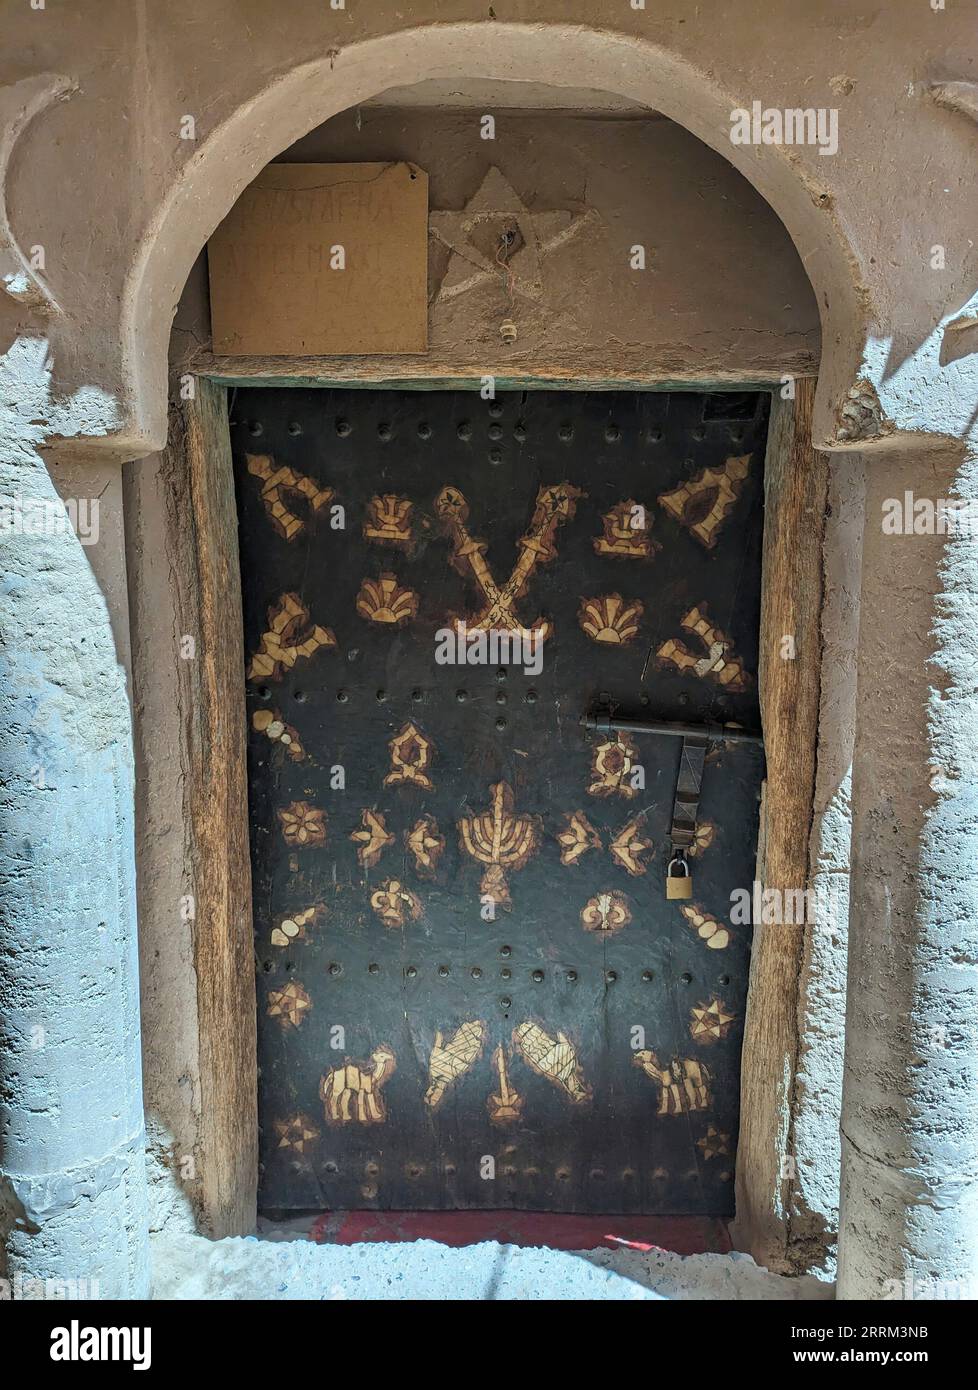 Une porte d'entrée d'une maison berbère décorée de symboles musulmans et juifs, Maroc Banque D'Images